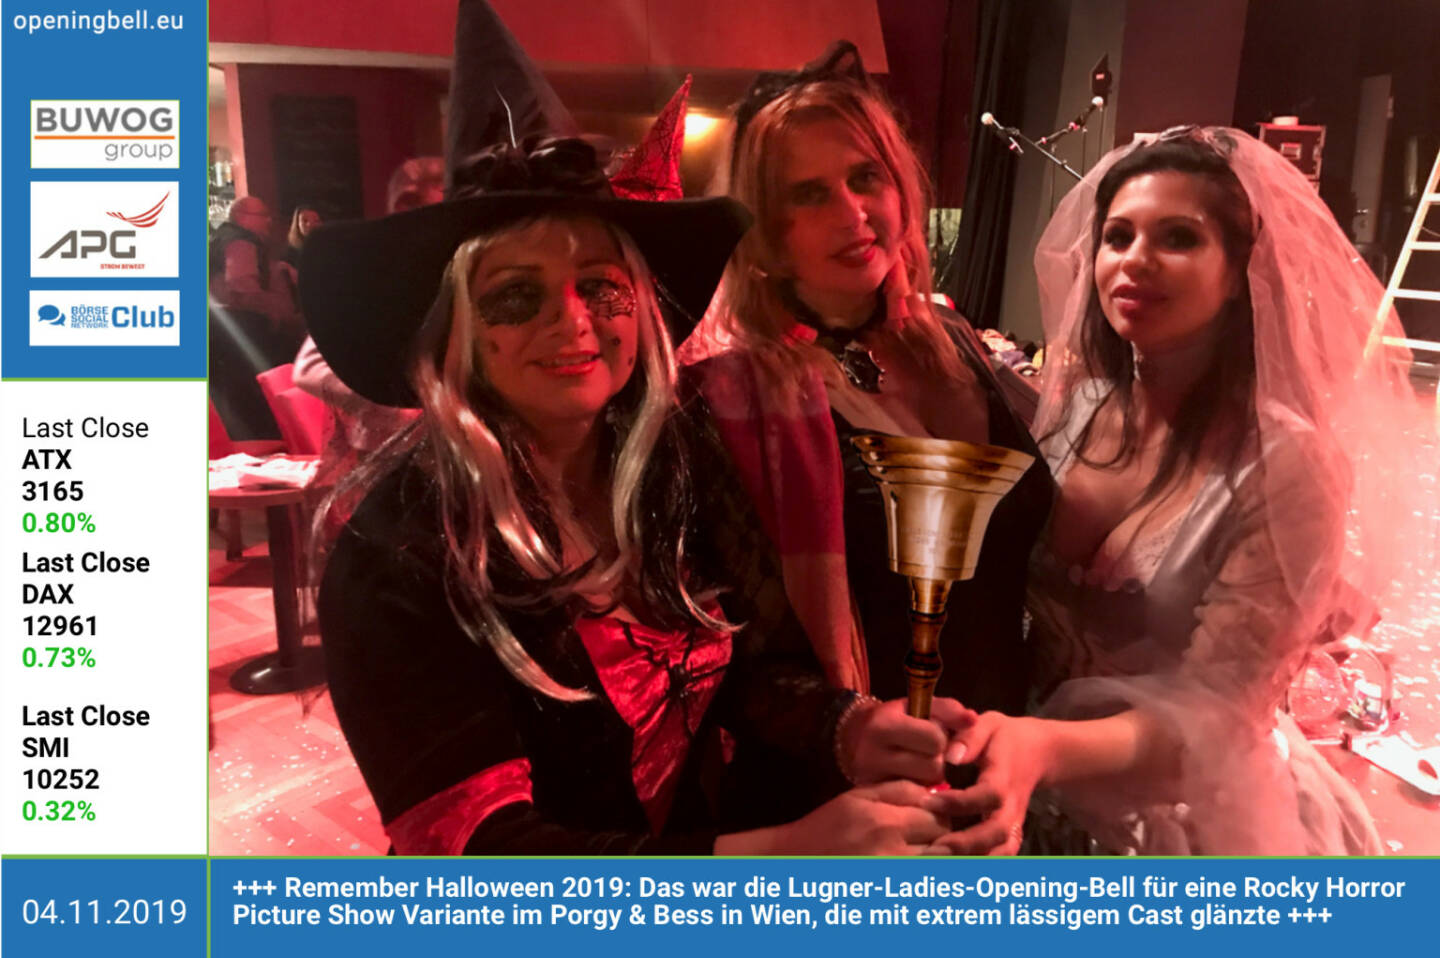 4.11.: Remember Halloween 2019: Das war die Lugner-Ladies-Opening-Bell für eine Rocky Horror Picture Show Variante im Porgy & Bess in Wien, die mit extrem lässigem Cast glänzte http://www.porgy.at 